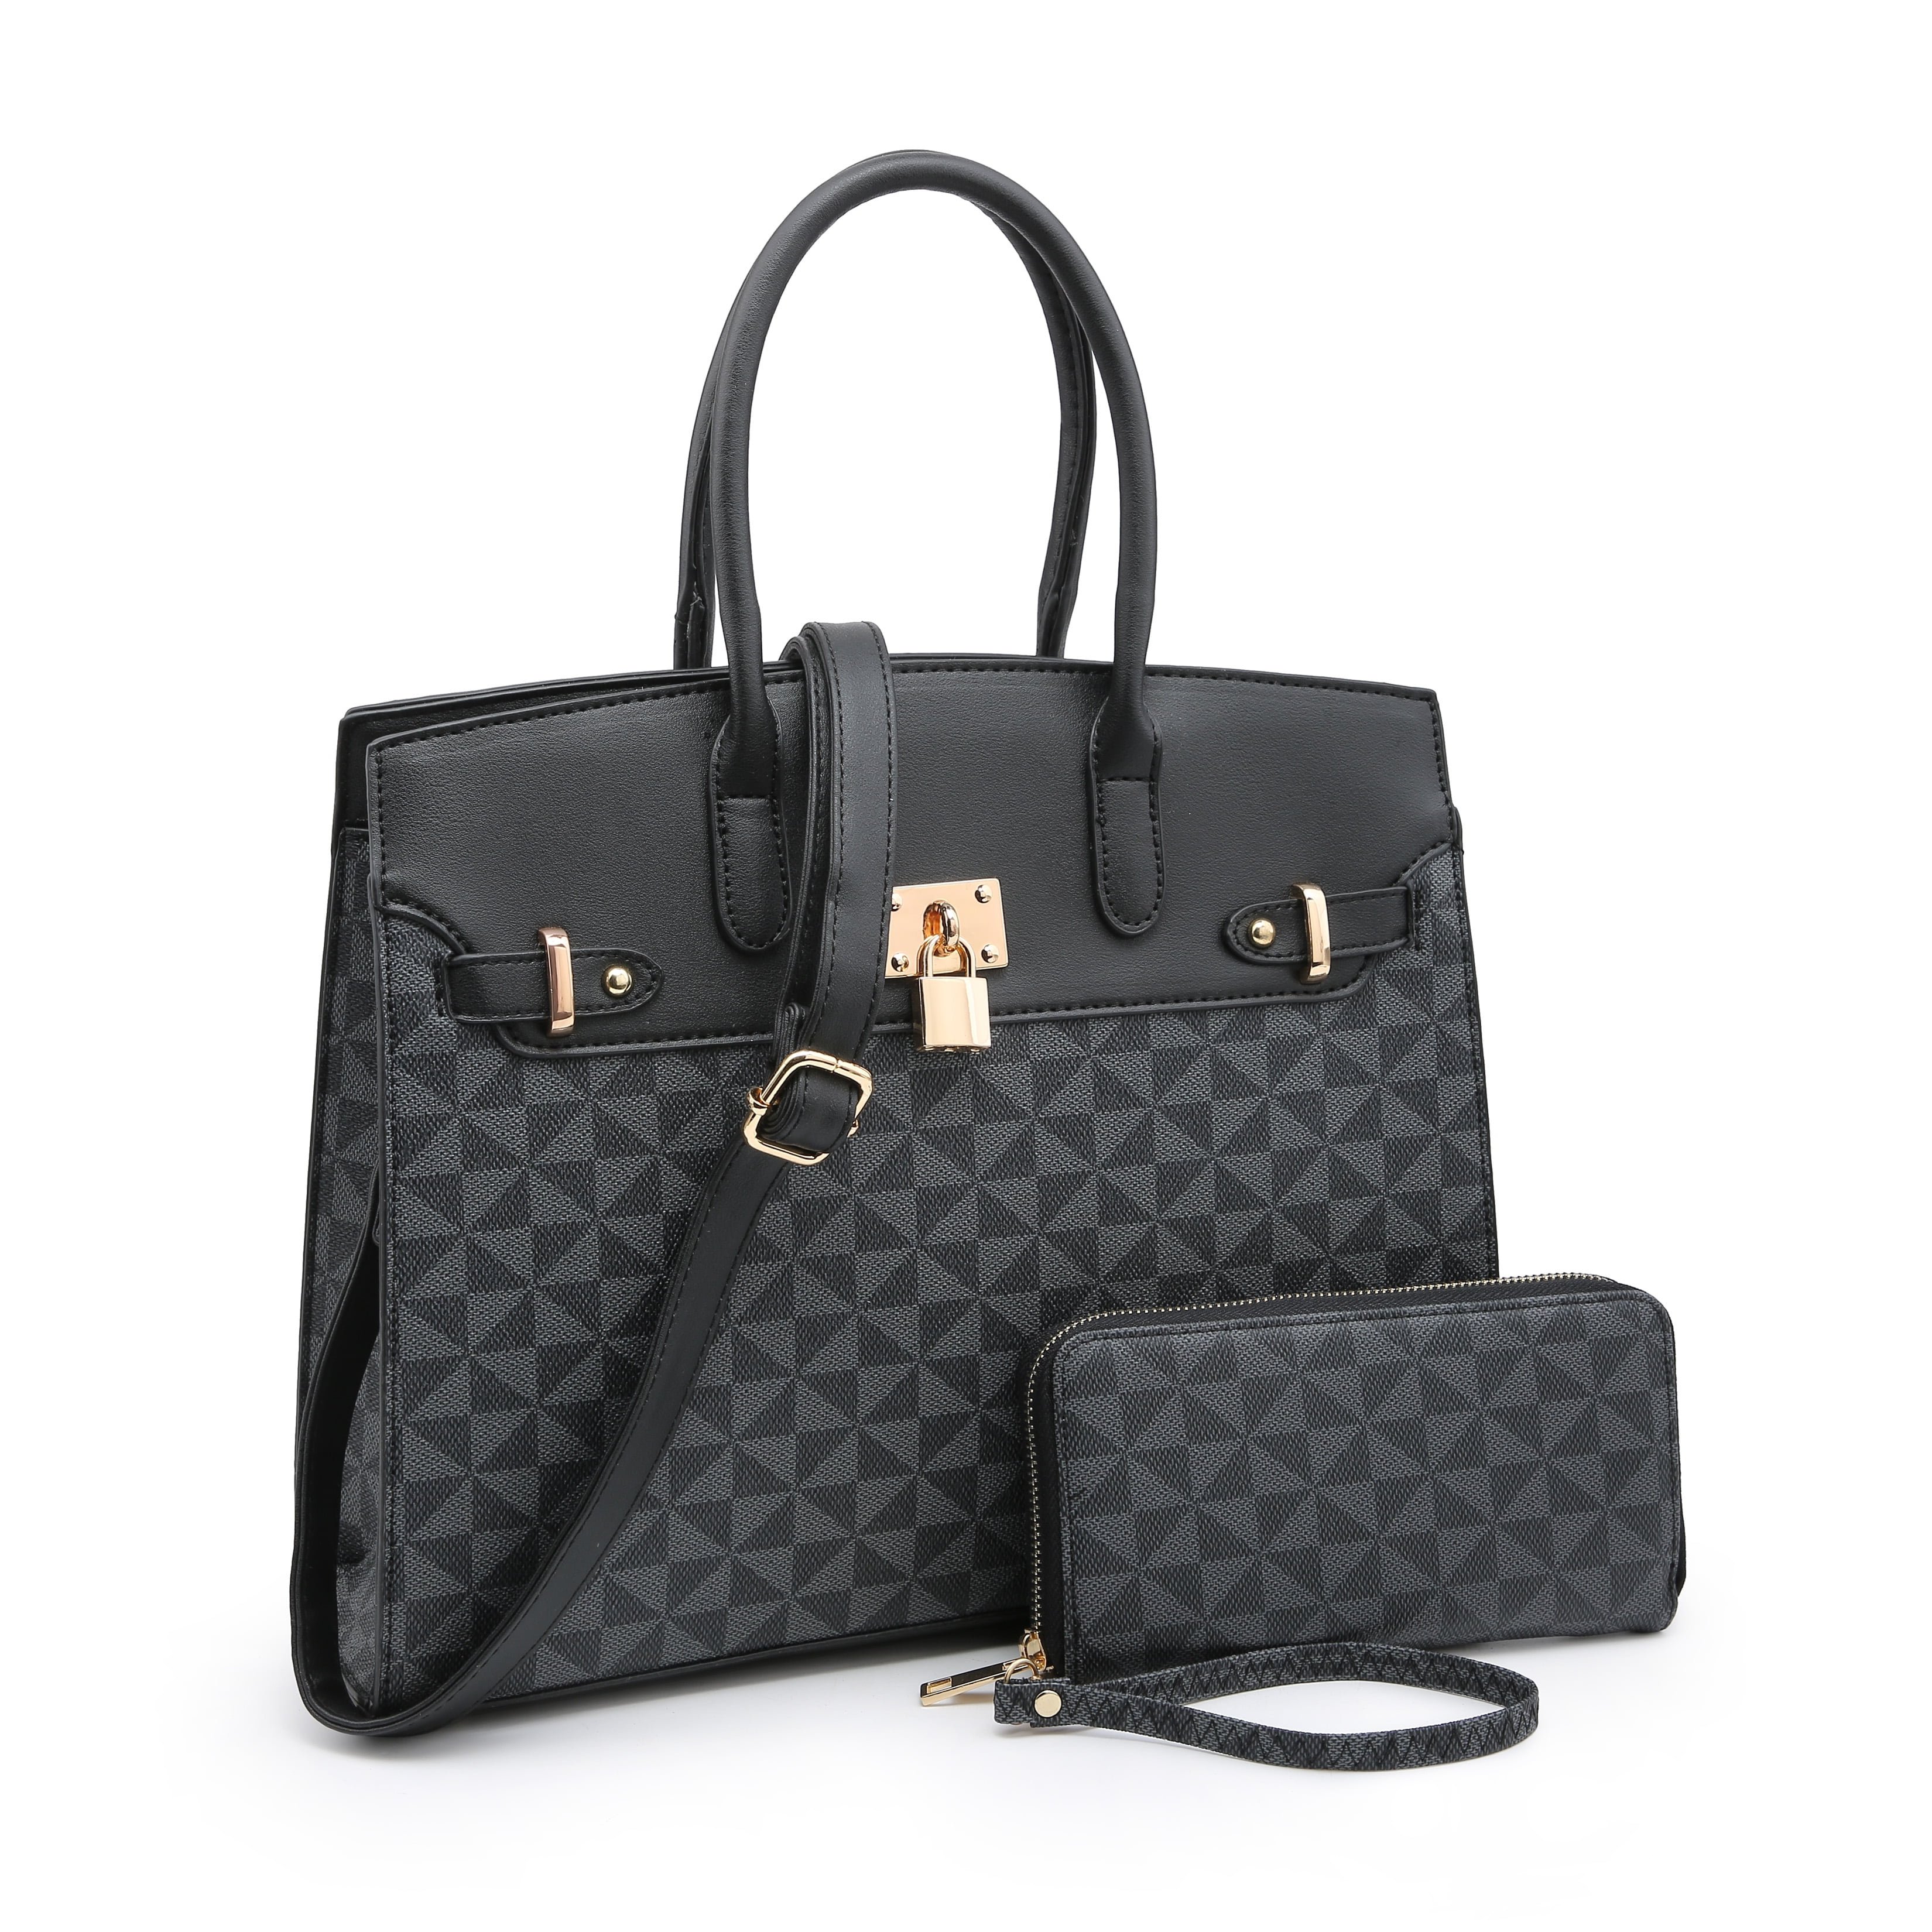 POPPY - 2020 New POPPY Handbags Set 2 in 1 Women&#39;s Top Handle Satchel Totes Handbag with Wallet ...